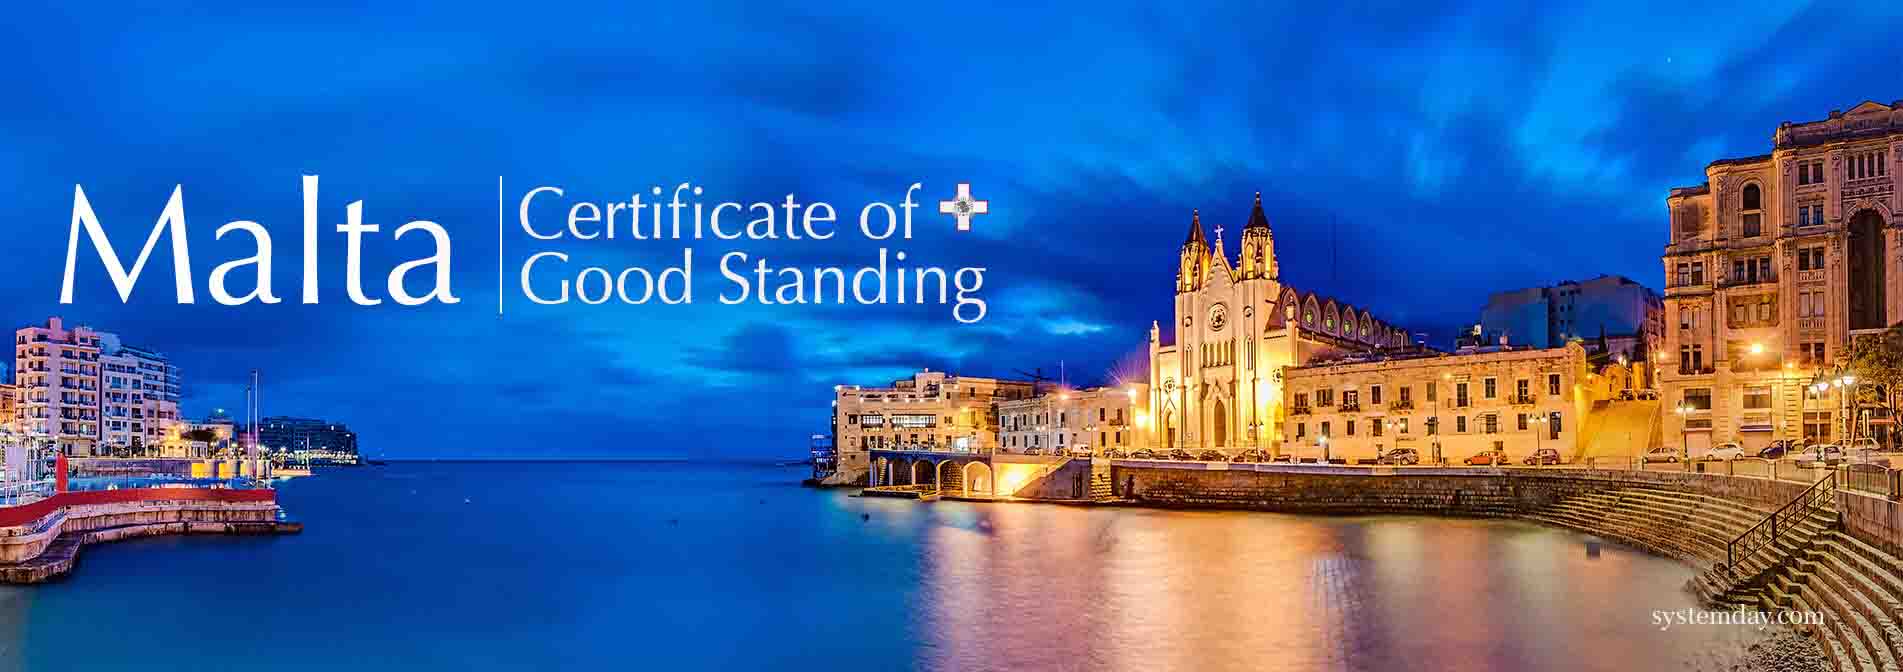 Malta Certificate of Good Standing